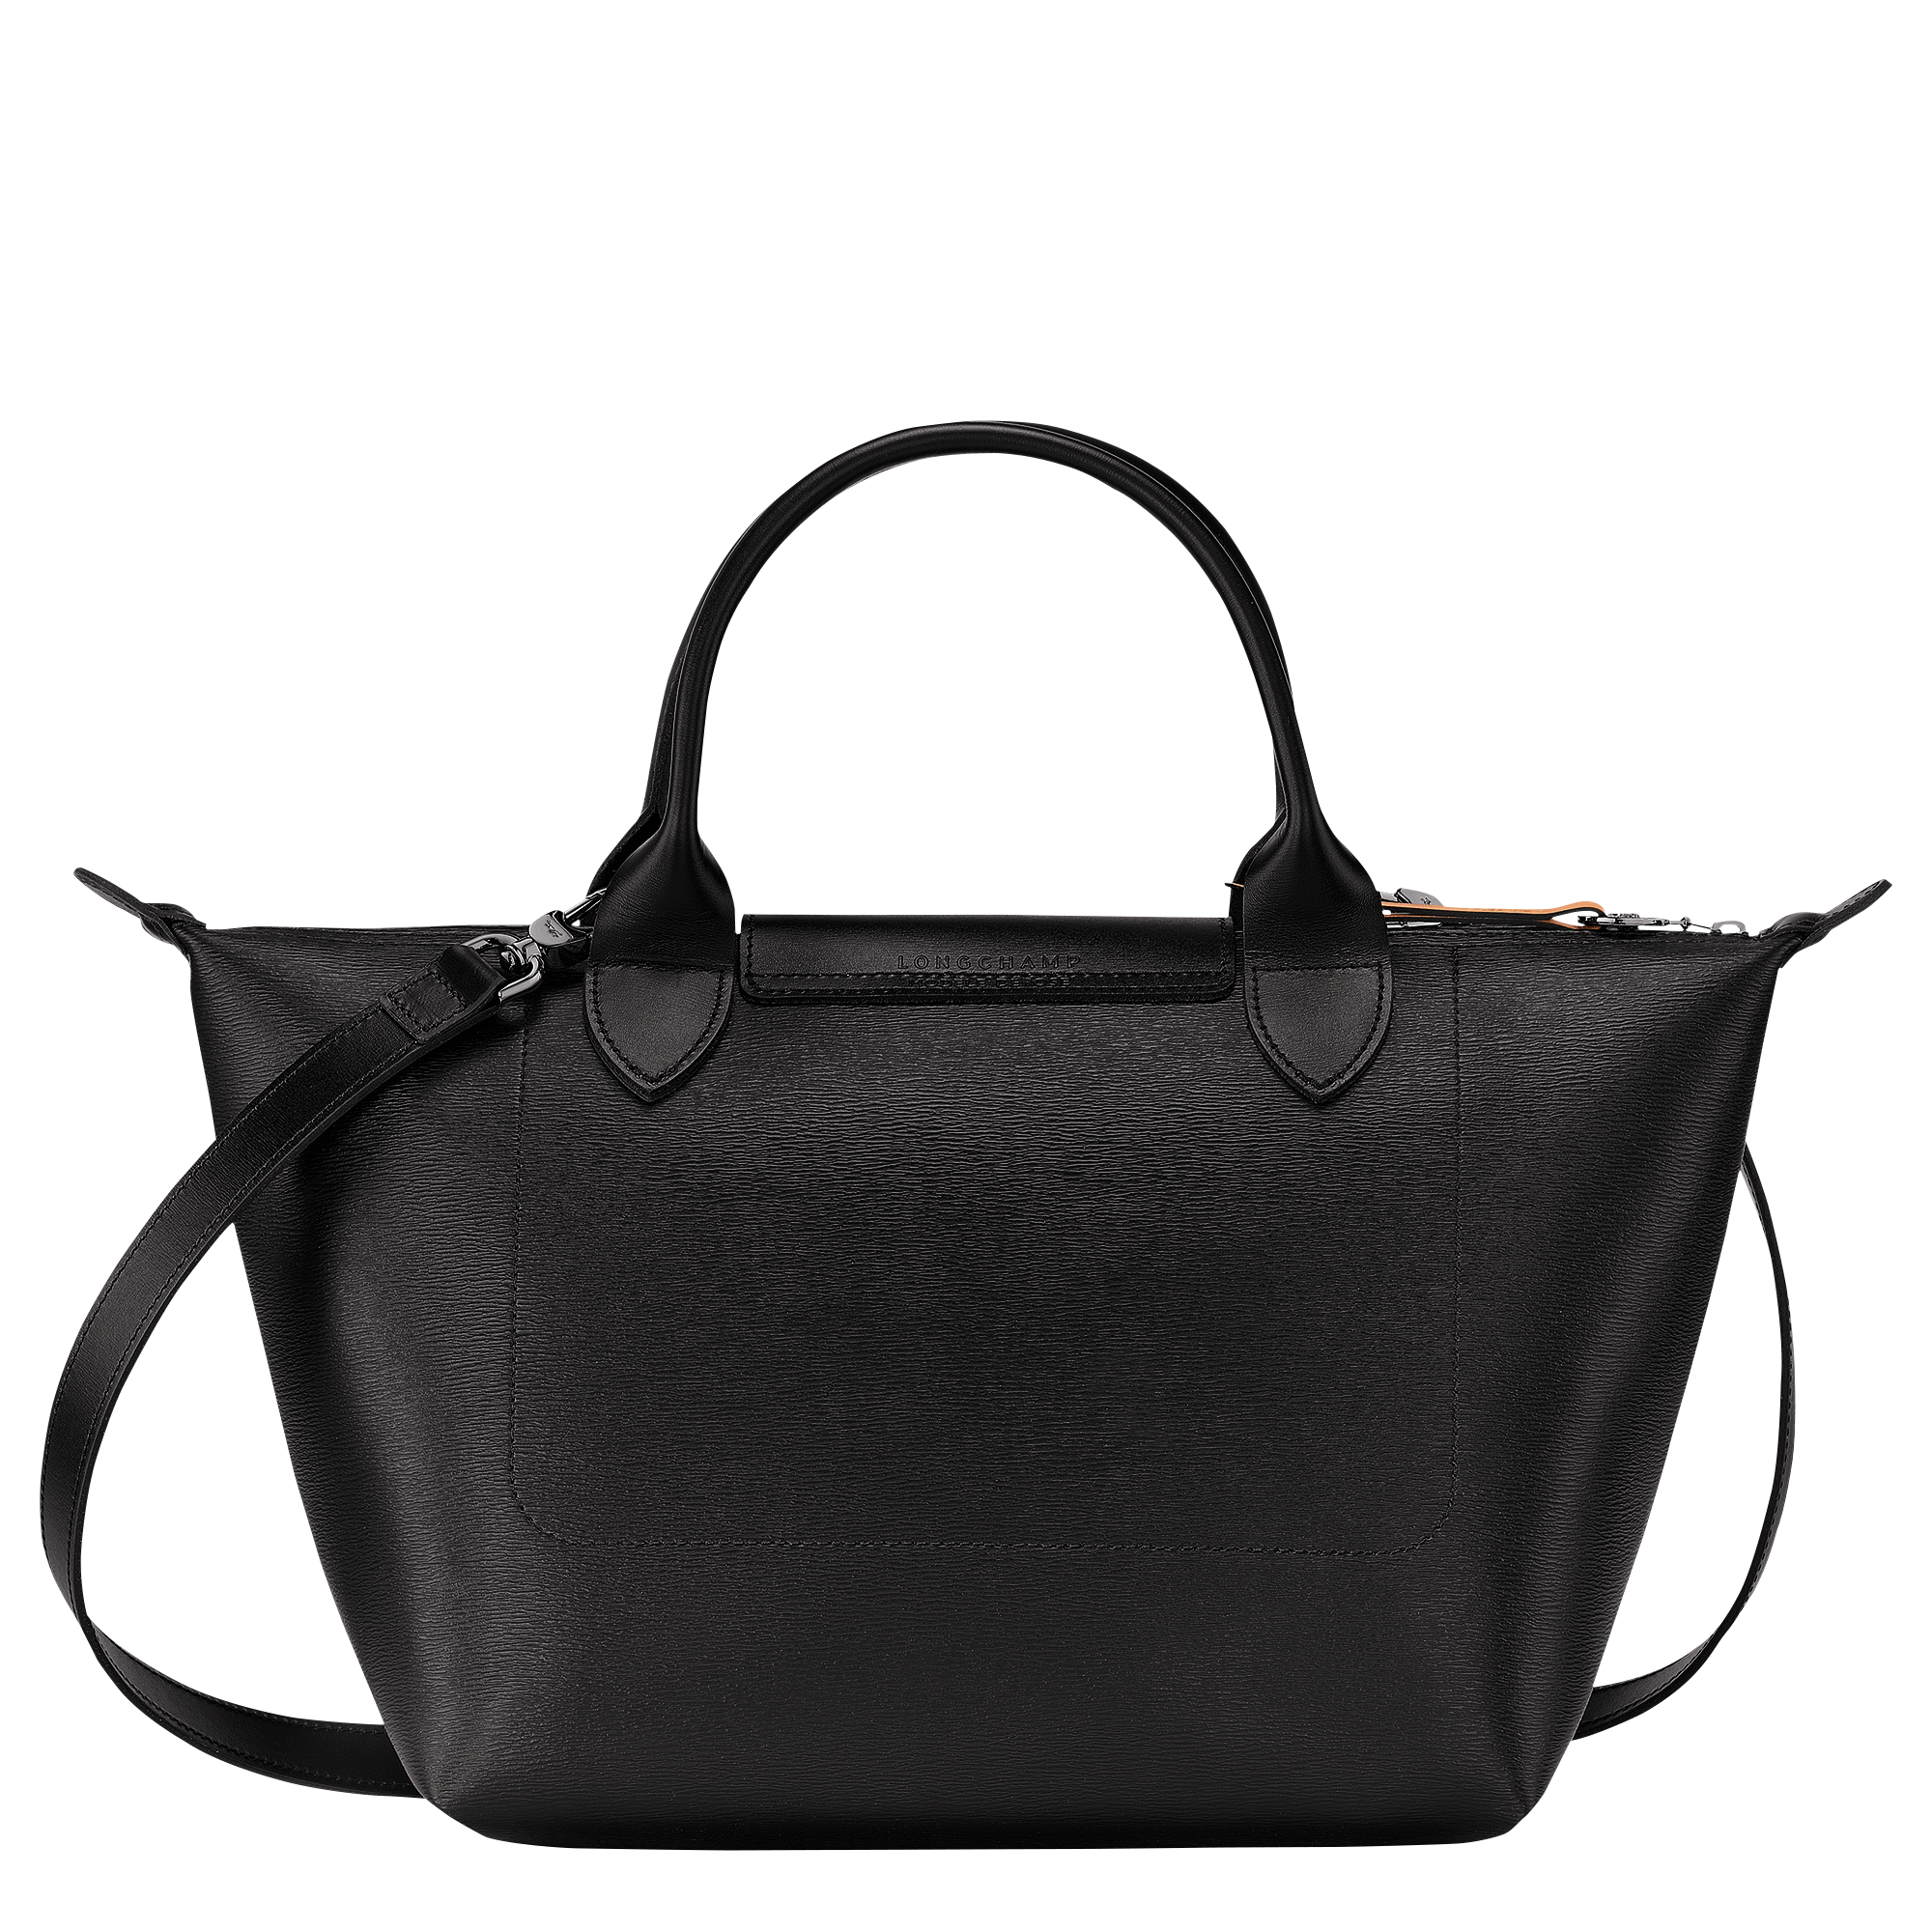 Longchamp Le Pliage Cuir Key Case, Men's Fashion, Bags, Sling Bags